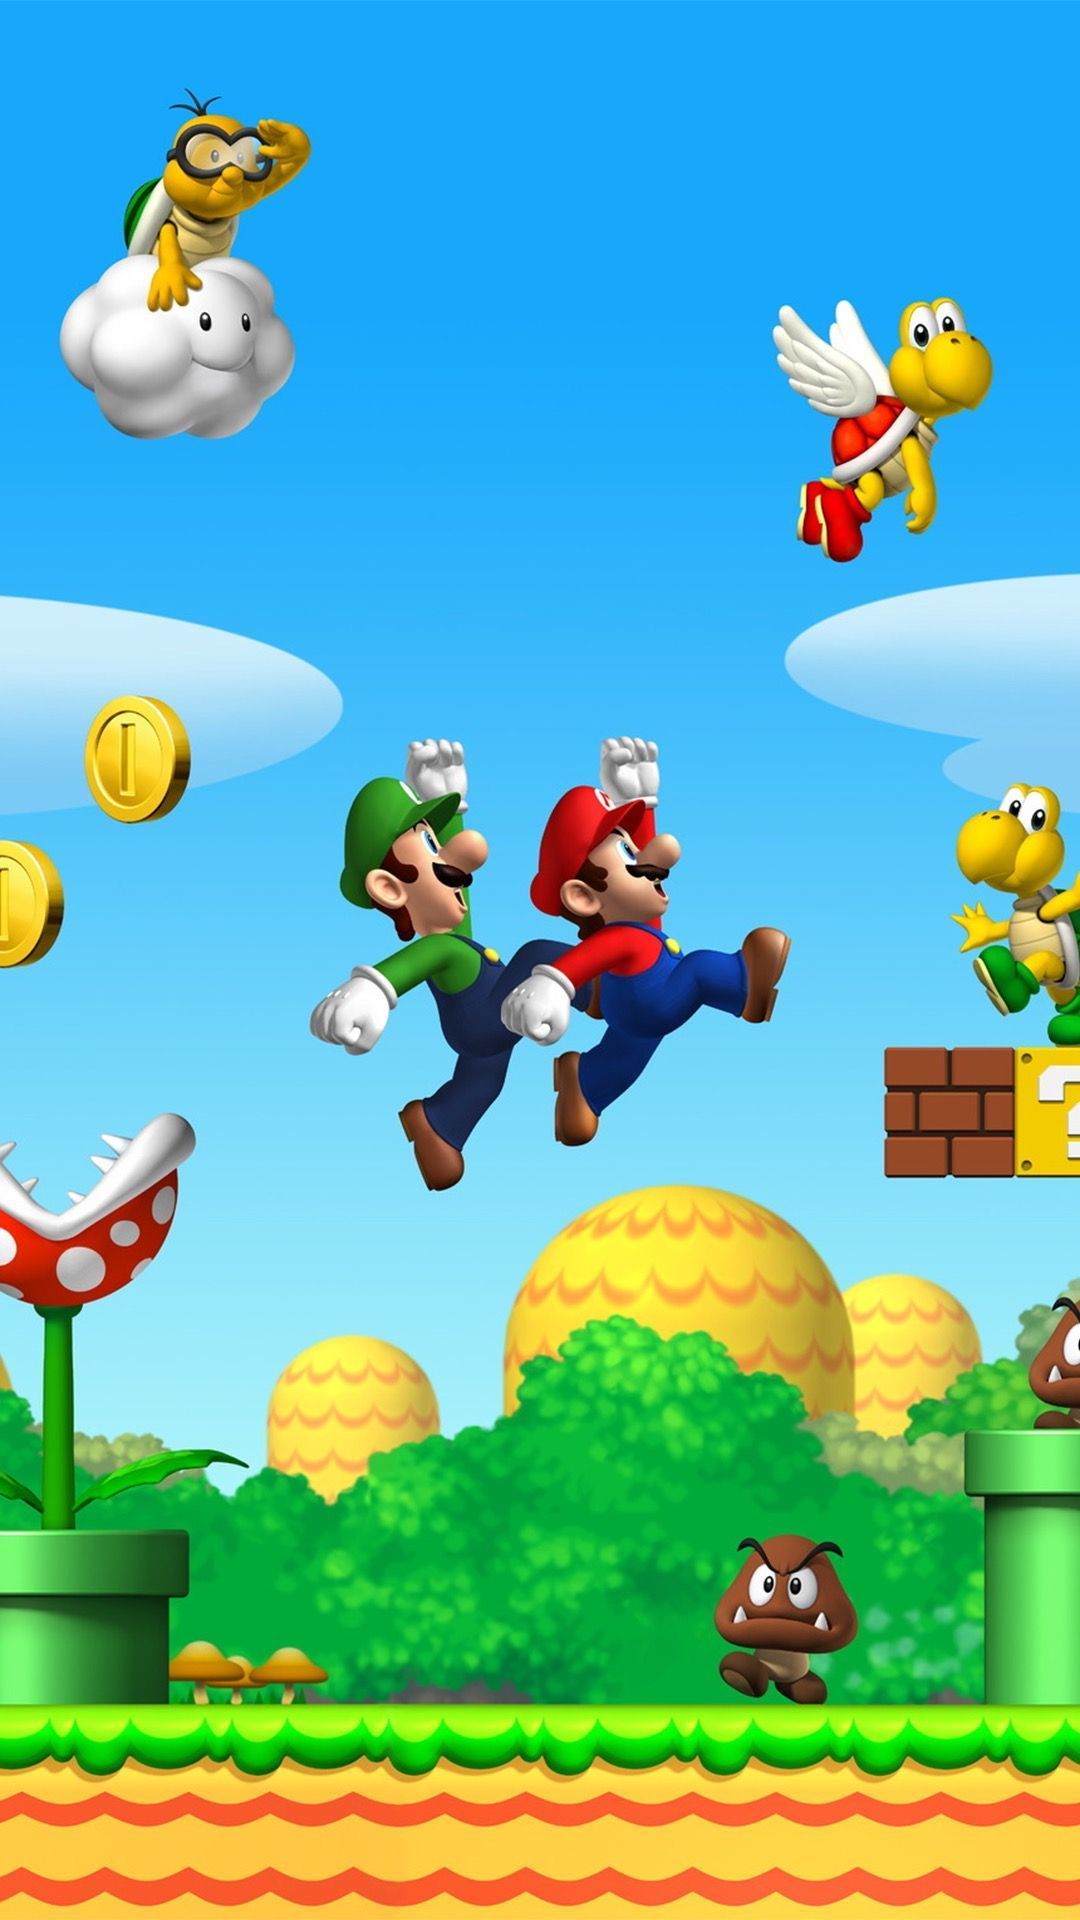 Bit Mario iPhone Background. Super mario art, Mario, Mario and luigi